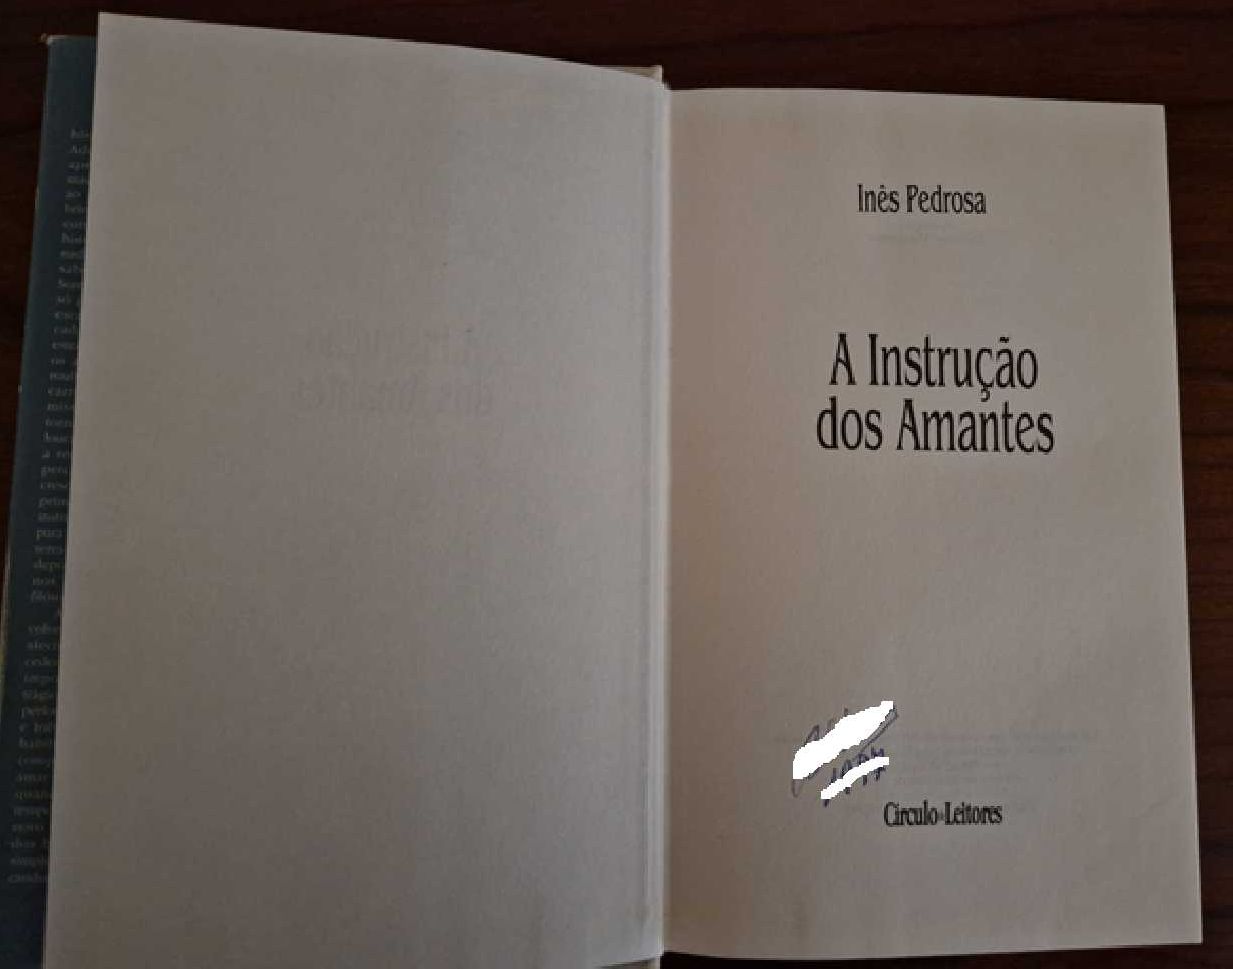 Livro “A instrução dos amantes” de Inês Pedrosa